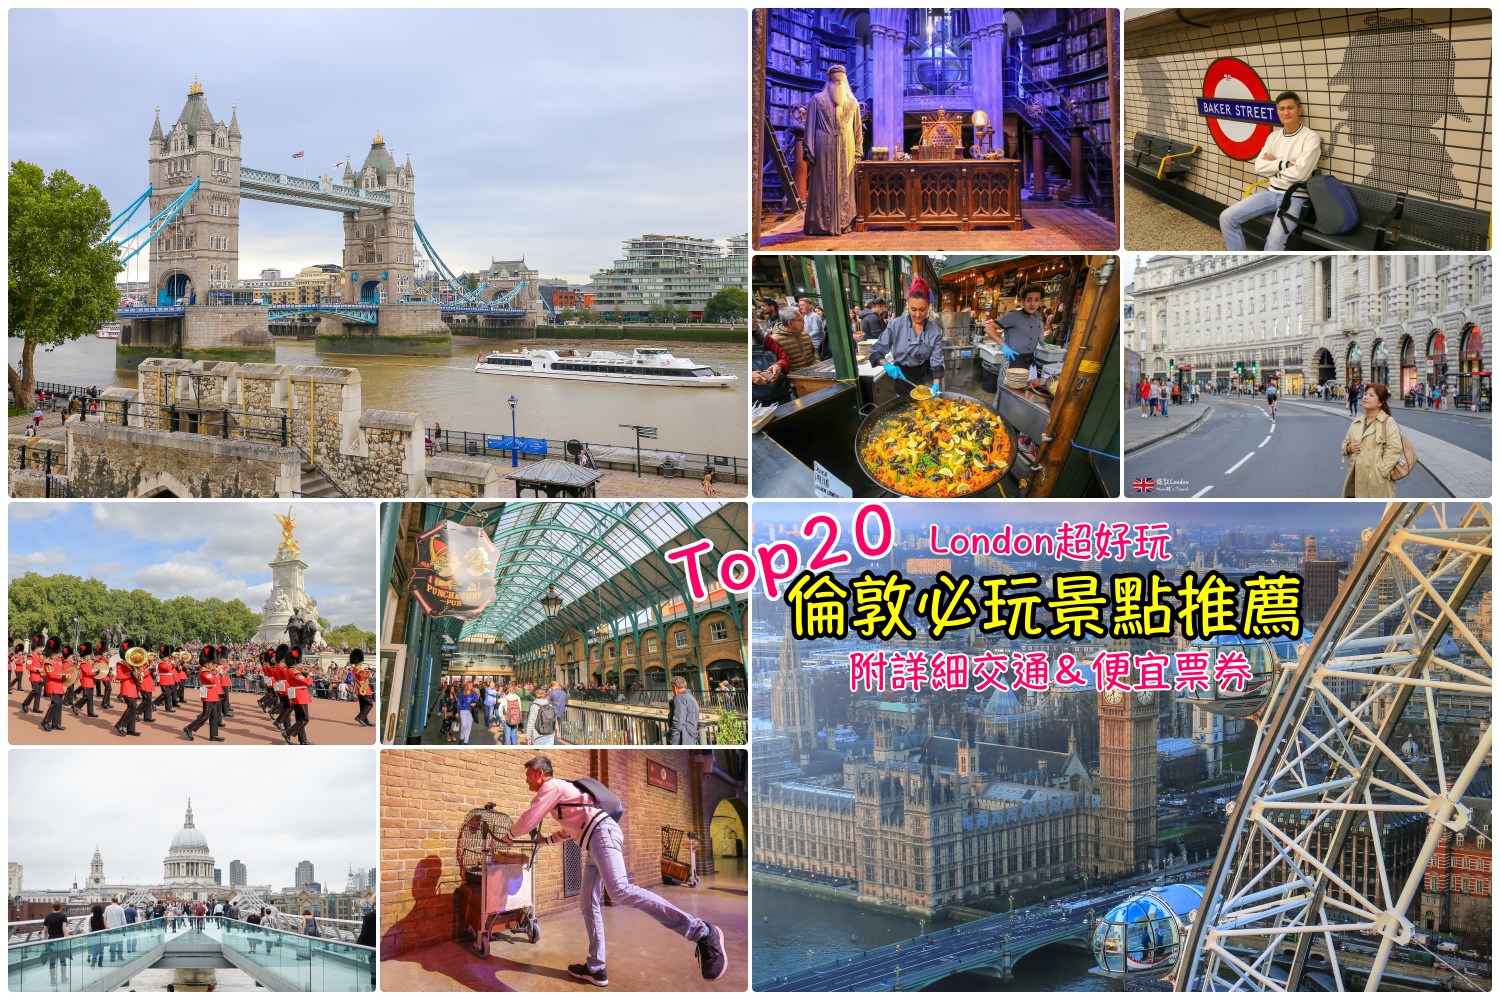 【倫敦景點推薦】英國倫敦自由行Top22好玩旅遊景點＆含省錢票券交通指南